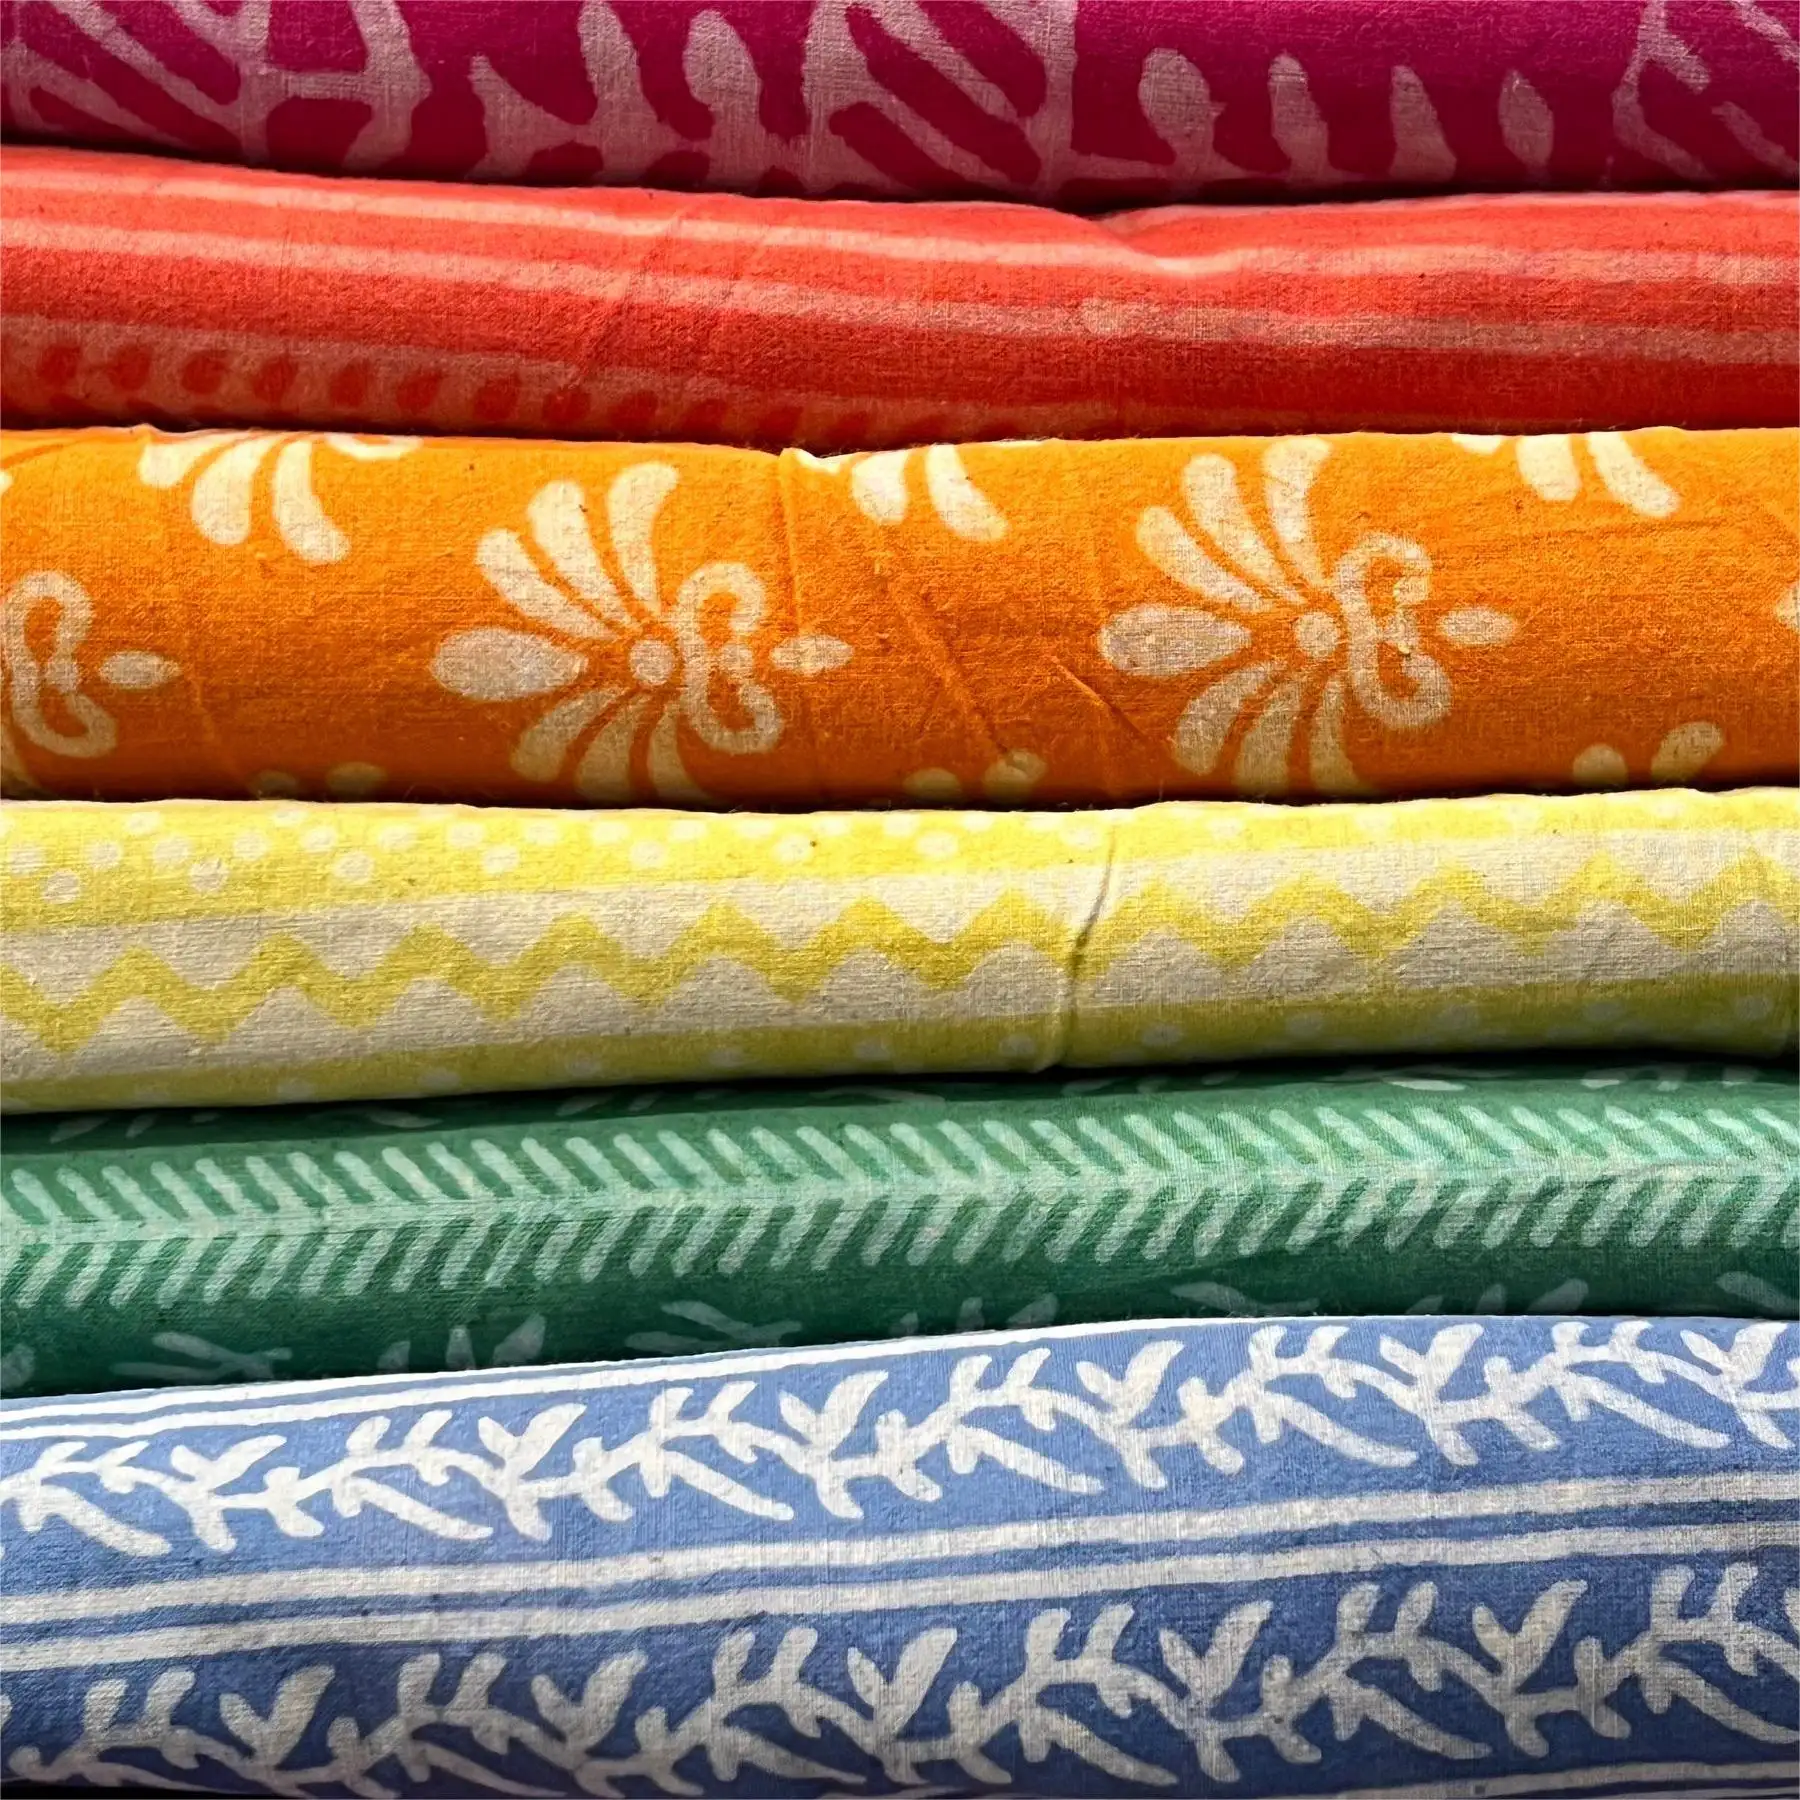 Tas campuran motif bunga India 100% katun Murni kain campur dan cocok untuk pakaian wanita tirai bantal tas